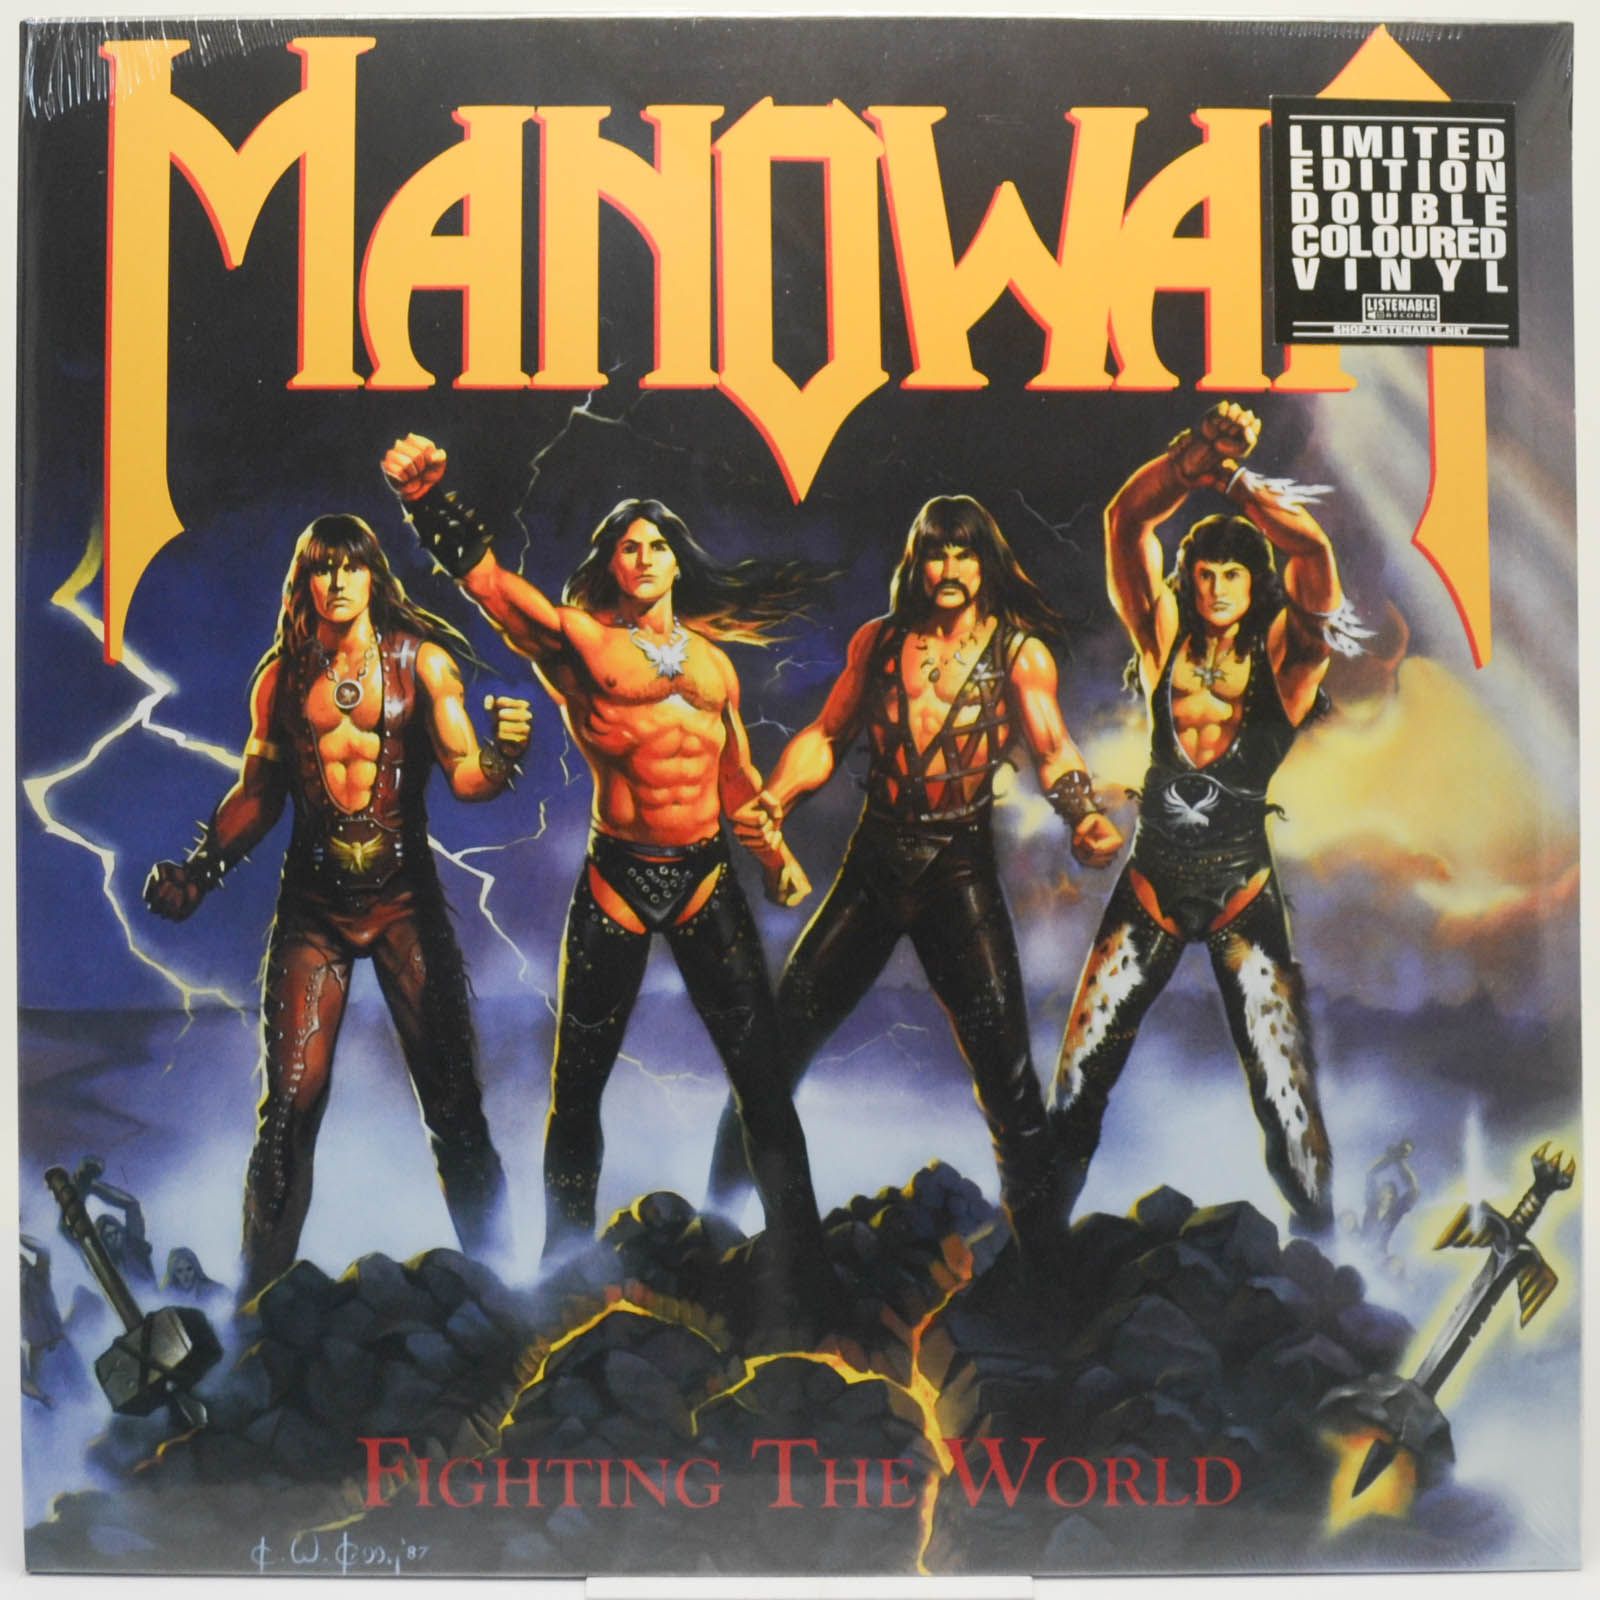 Manowar — Fighting The World, 1987